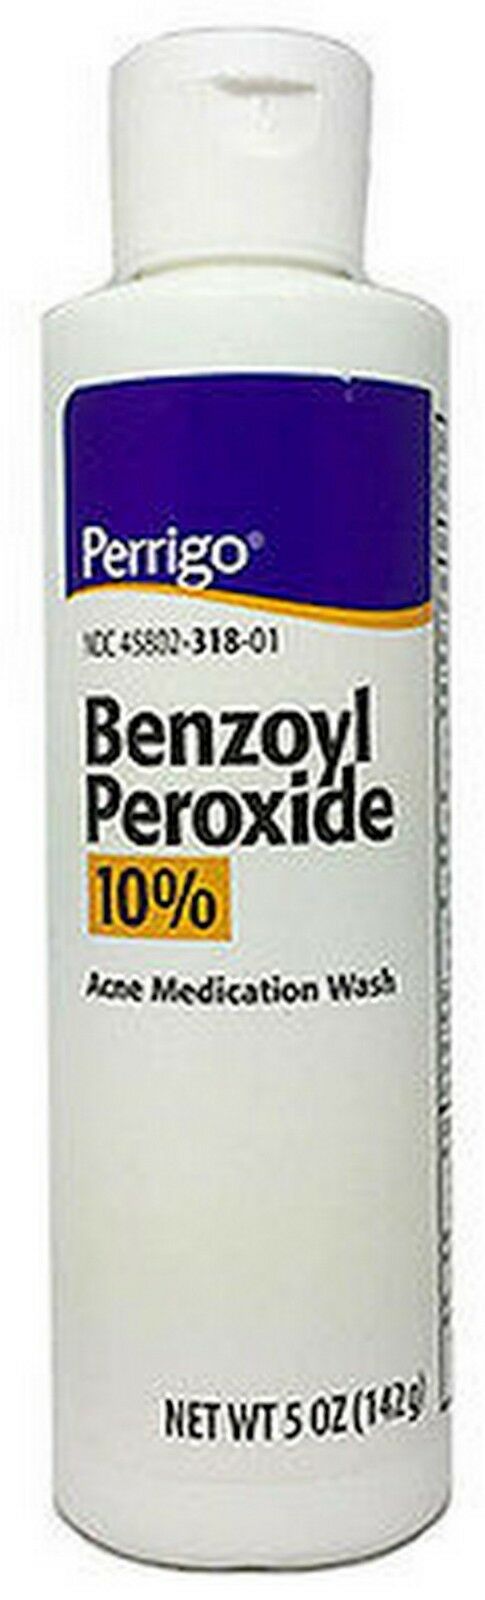 Benzoyl Peroxide 10% Acne Wash 5oz Perrigo - Pharmacy Grade